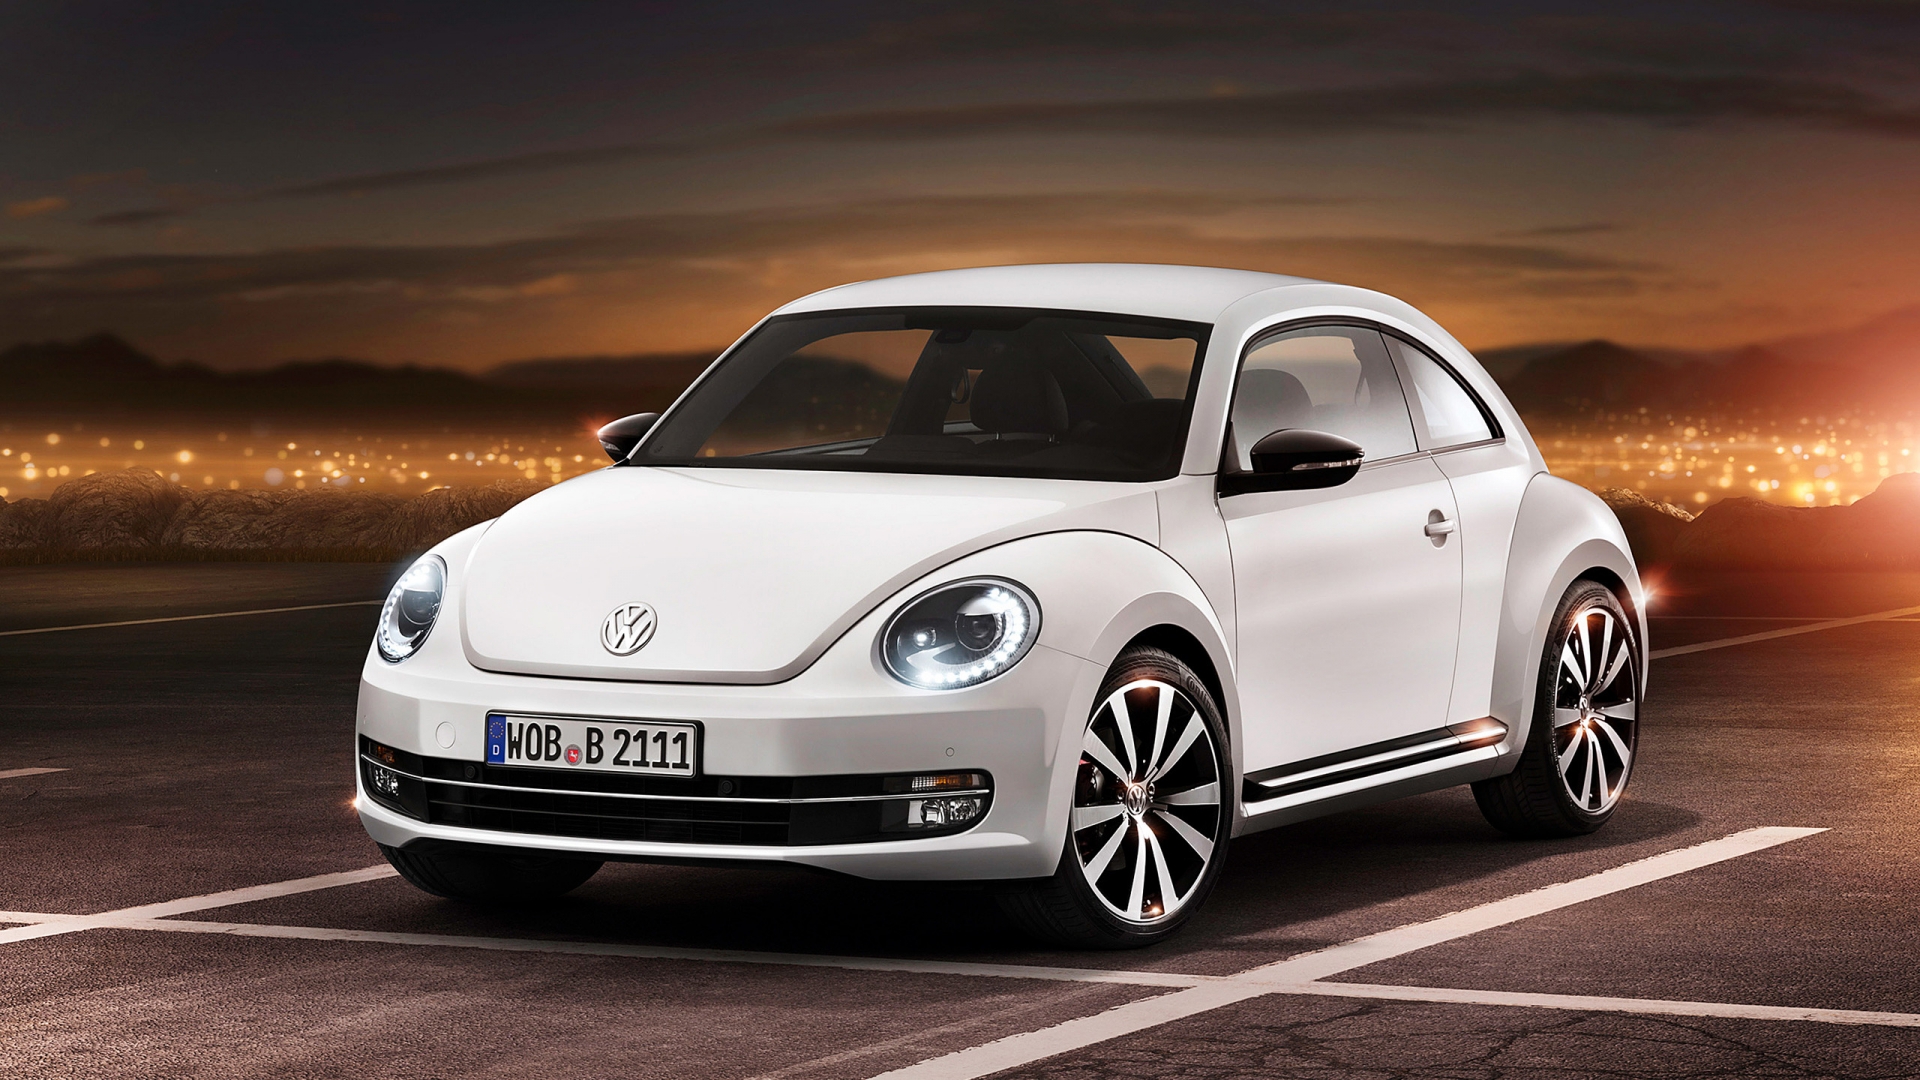 2012 Volkswagen Beetle for 1920 x 1080 HDTV 1080p resolution